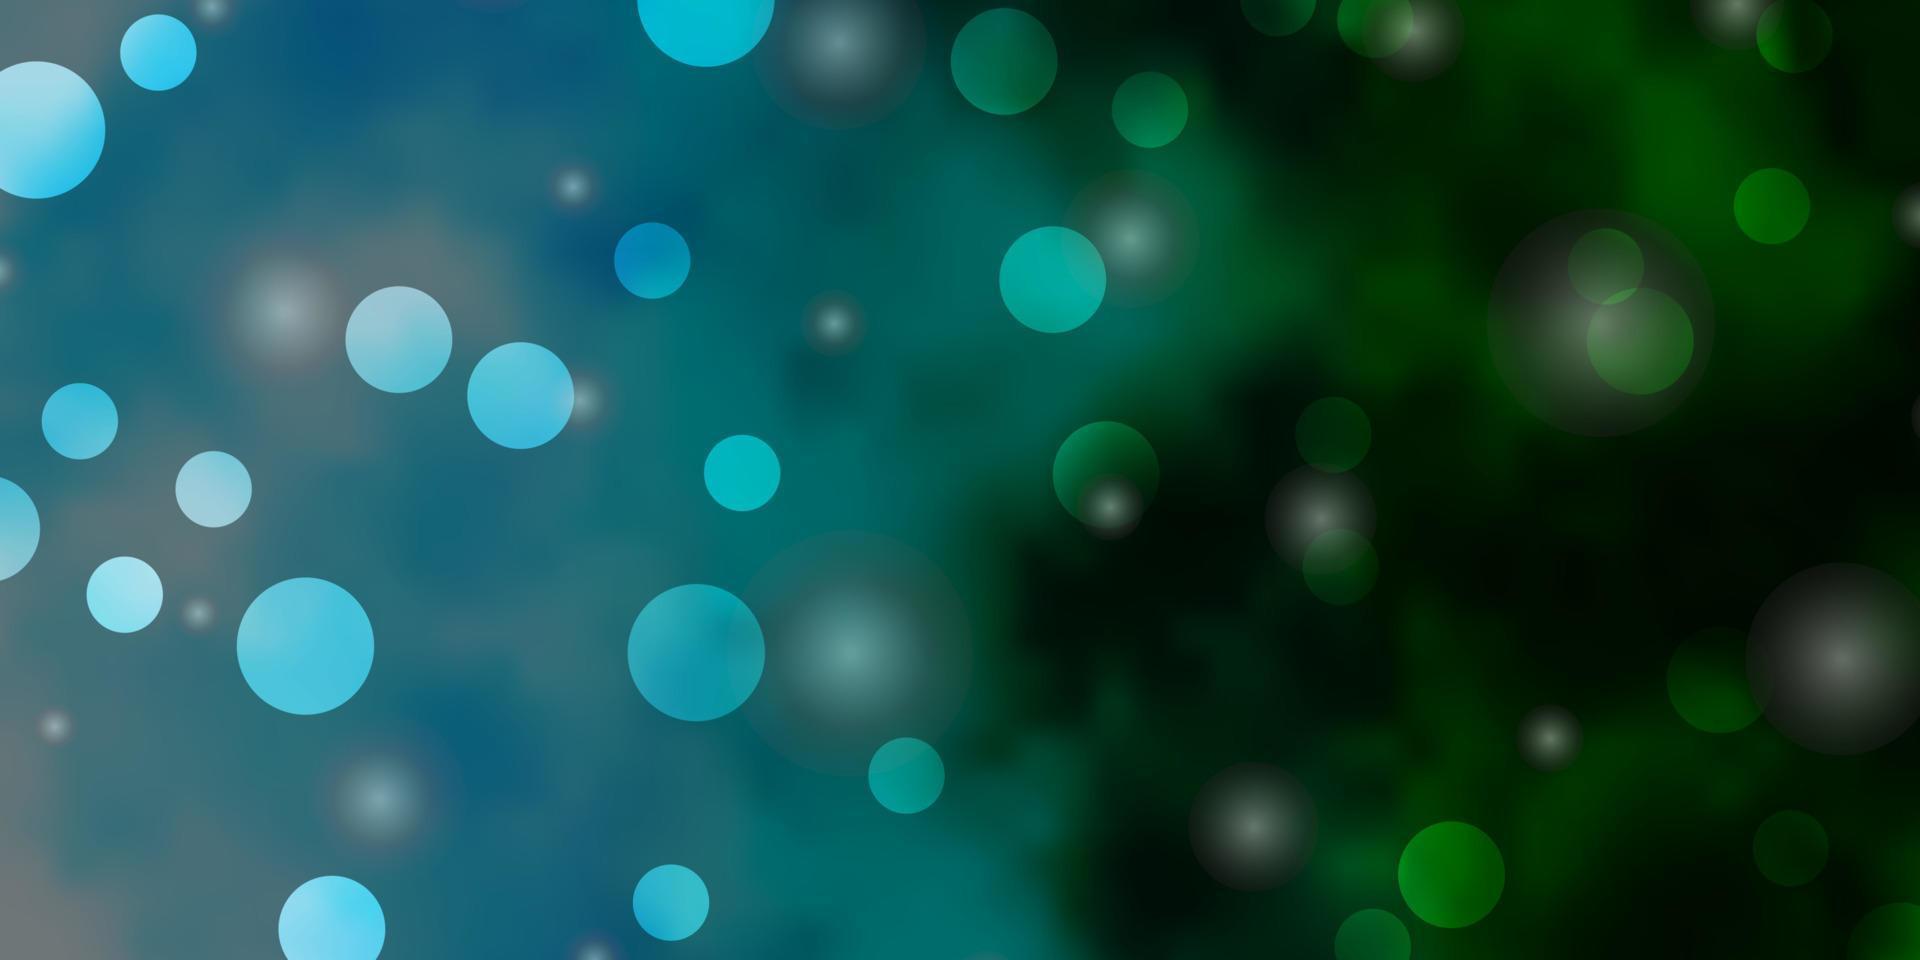 texture de vecteur bleu clair, vert avec des cercles, des étoiles.